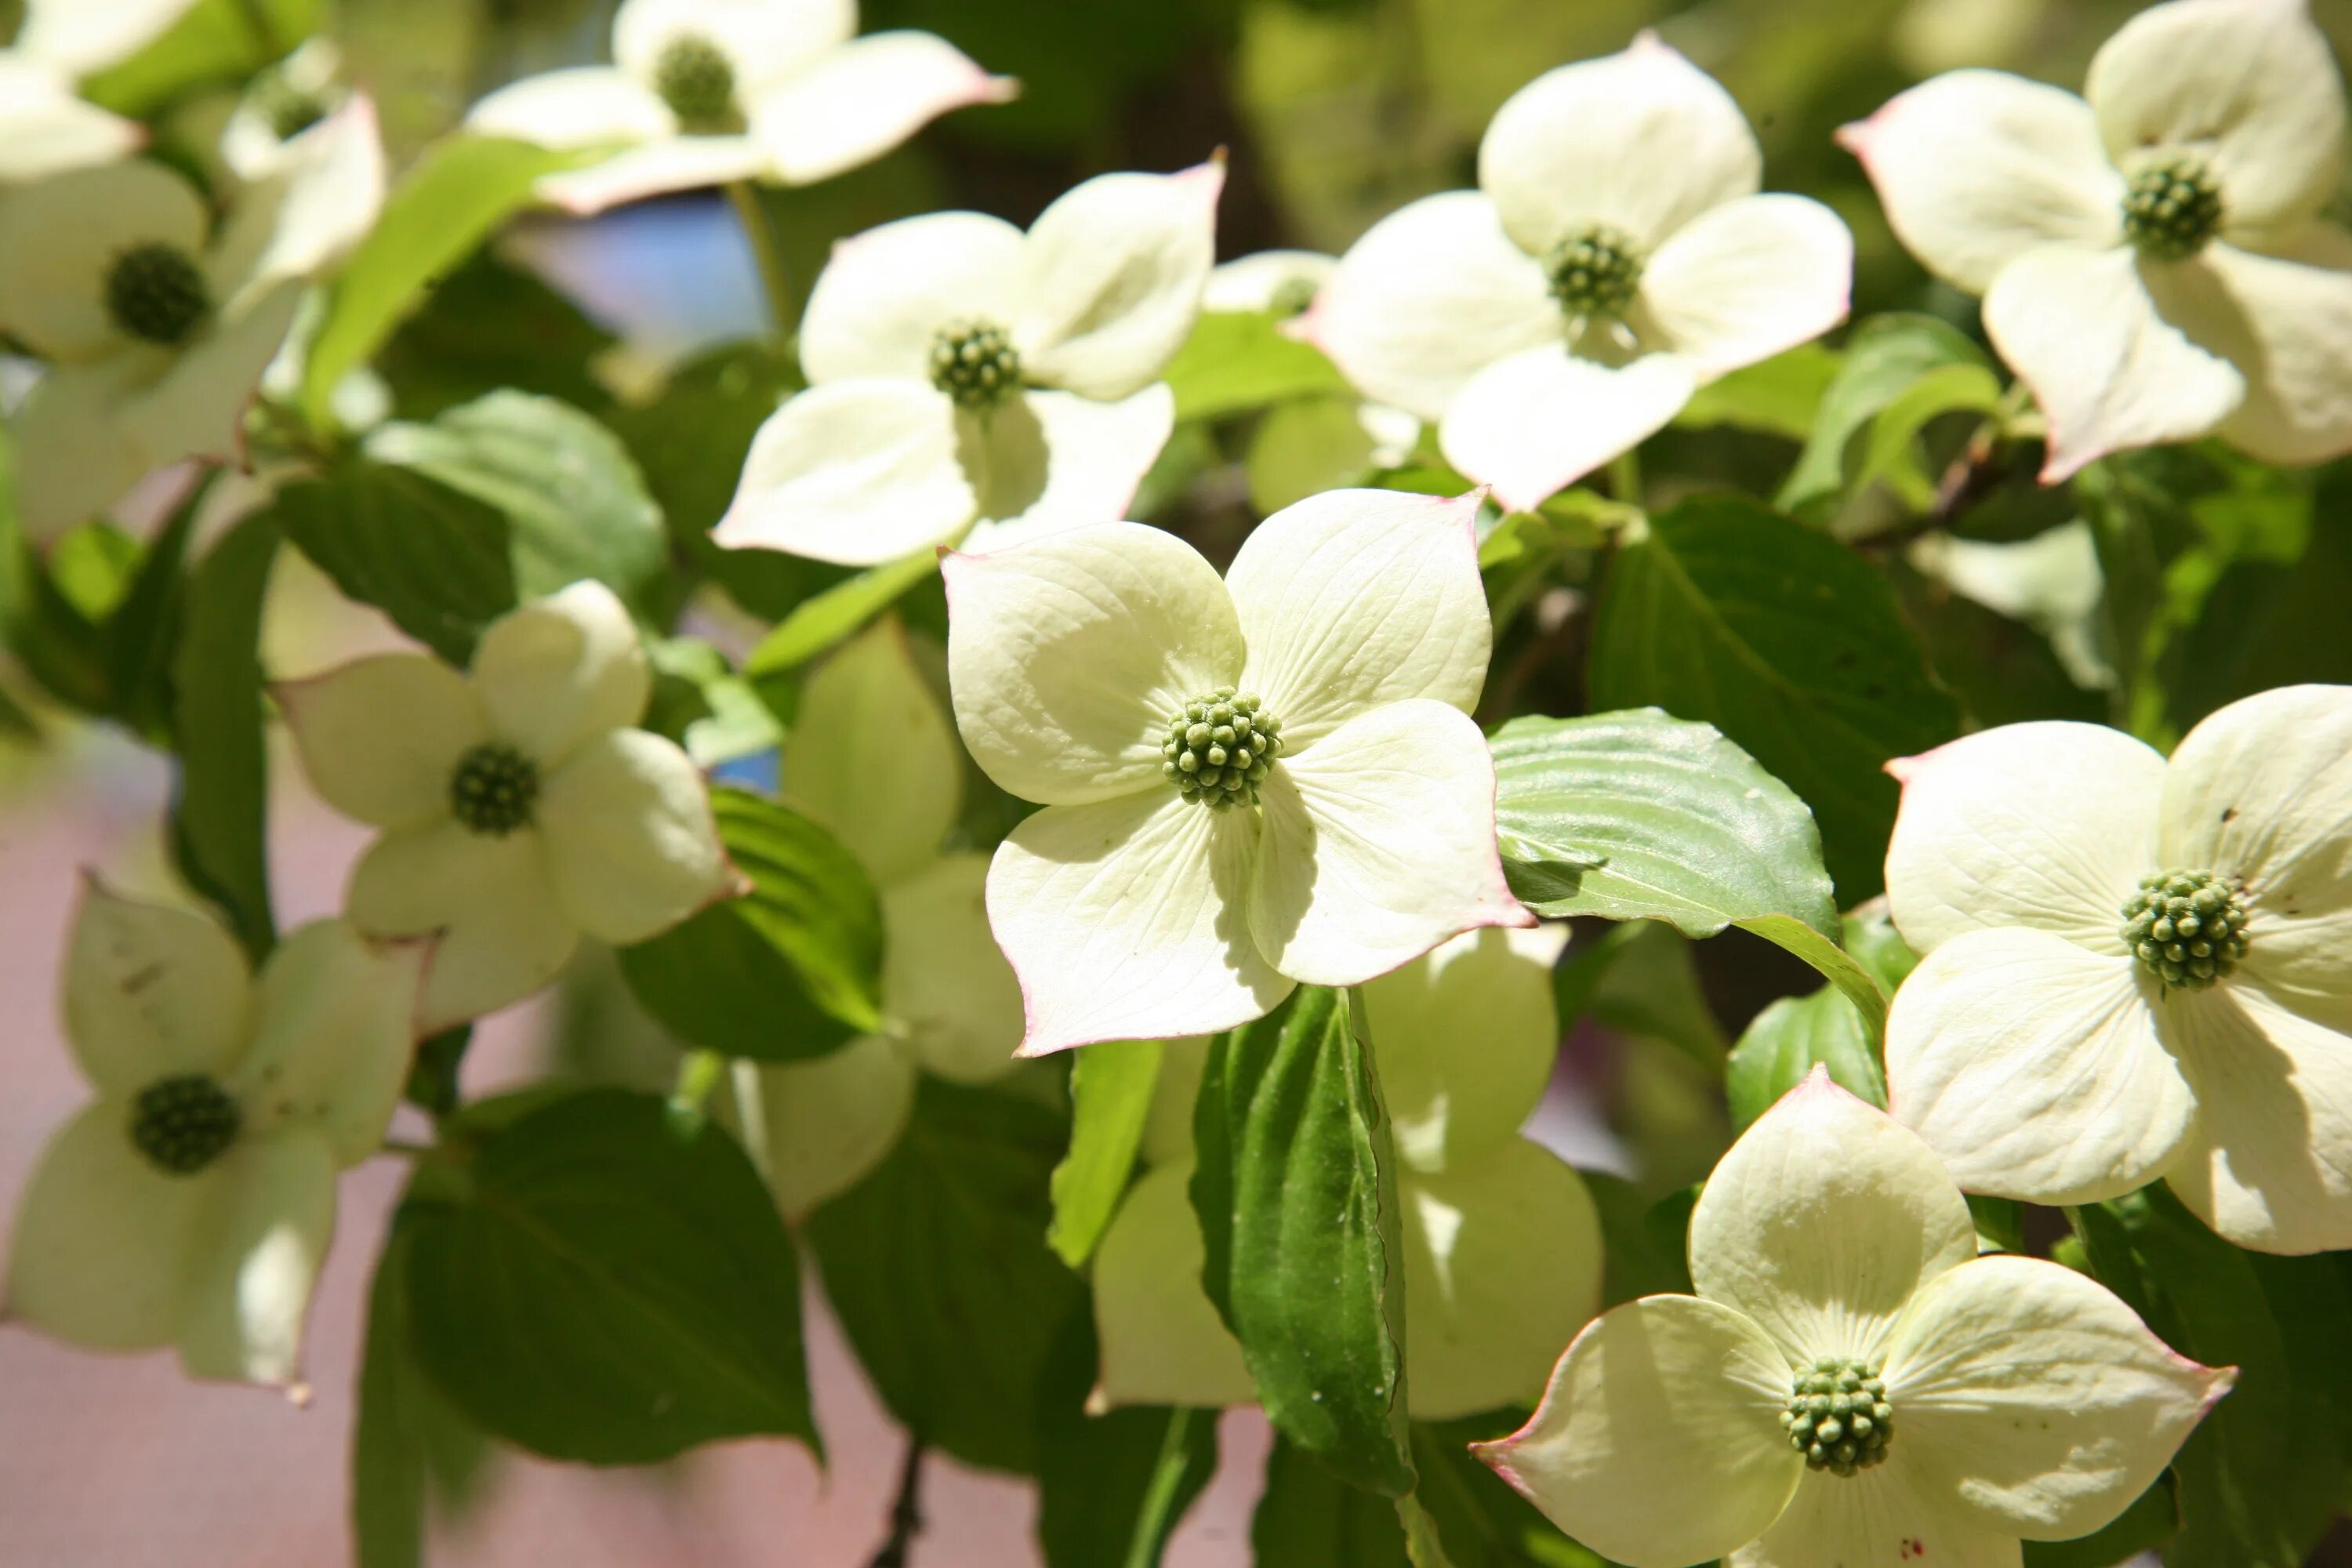 Flowering Dogwood растение. Цветок четыре лепестка белый. Белый цветок с 4 лепестками. Кустарник с белыми цветочками четыре лепестка.